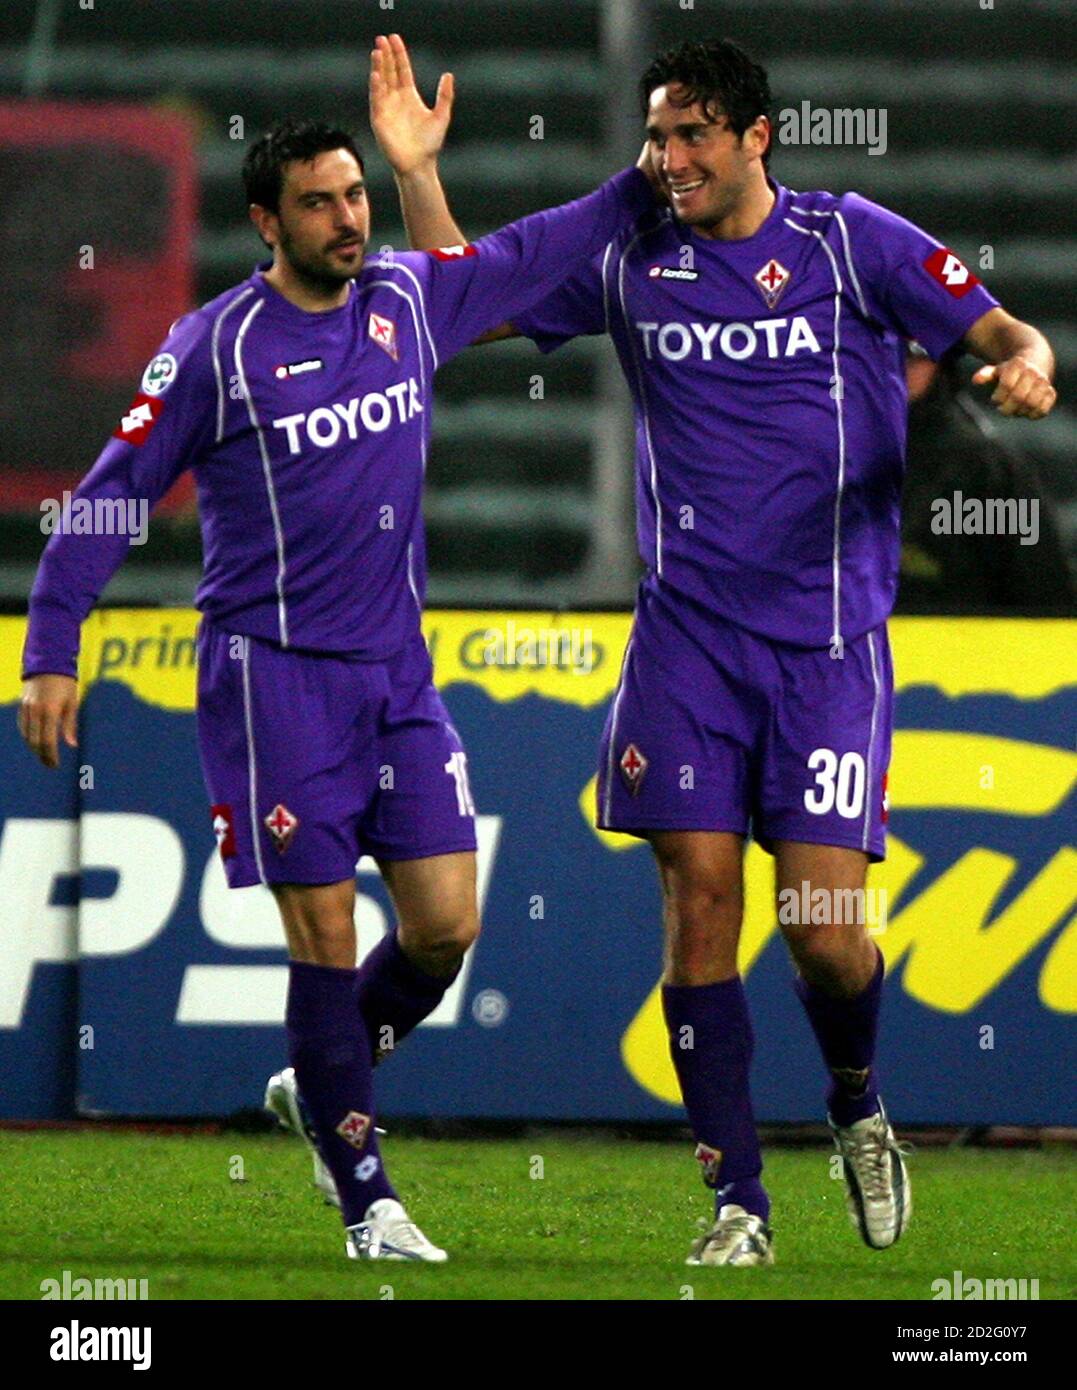 Fiorentina Luca Toni (R) feiert mit seinen Teamkollegen Stefano Fiore (L) nach seinem Tor gegen Juventus Turin in die italienische Serie A Fußballspiel im Delle Alpi Stadion in Turin, Norditalien, 9. April 2006. REUTERS/Daniele La Monaca Stockfoto